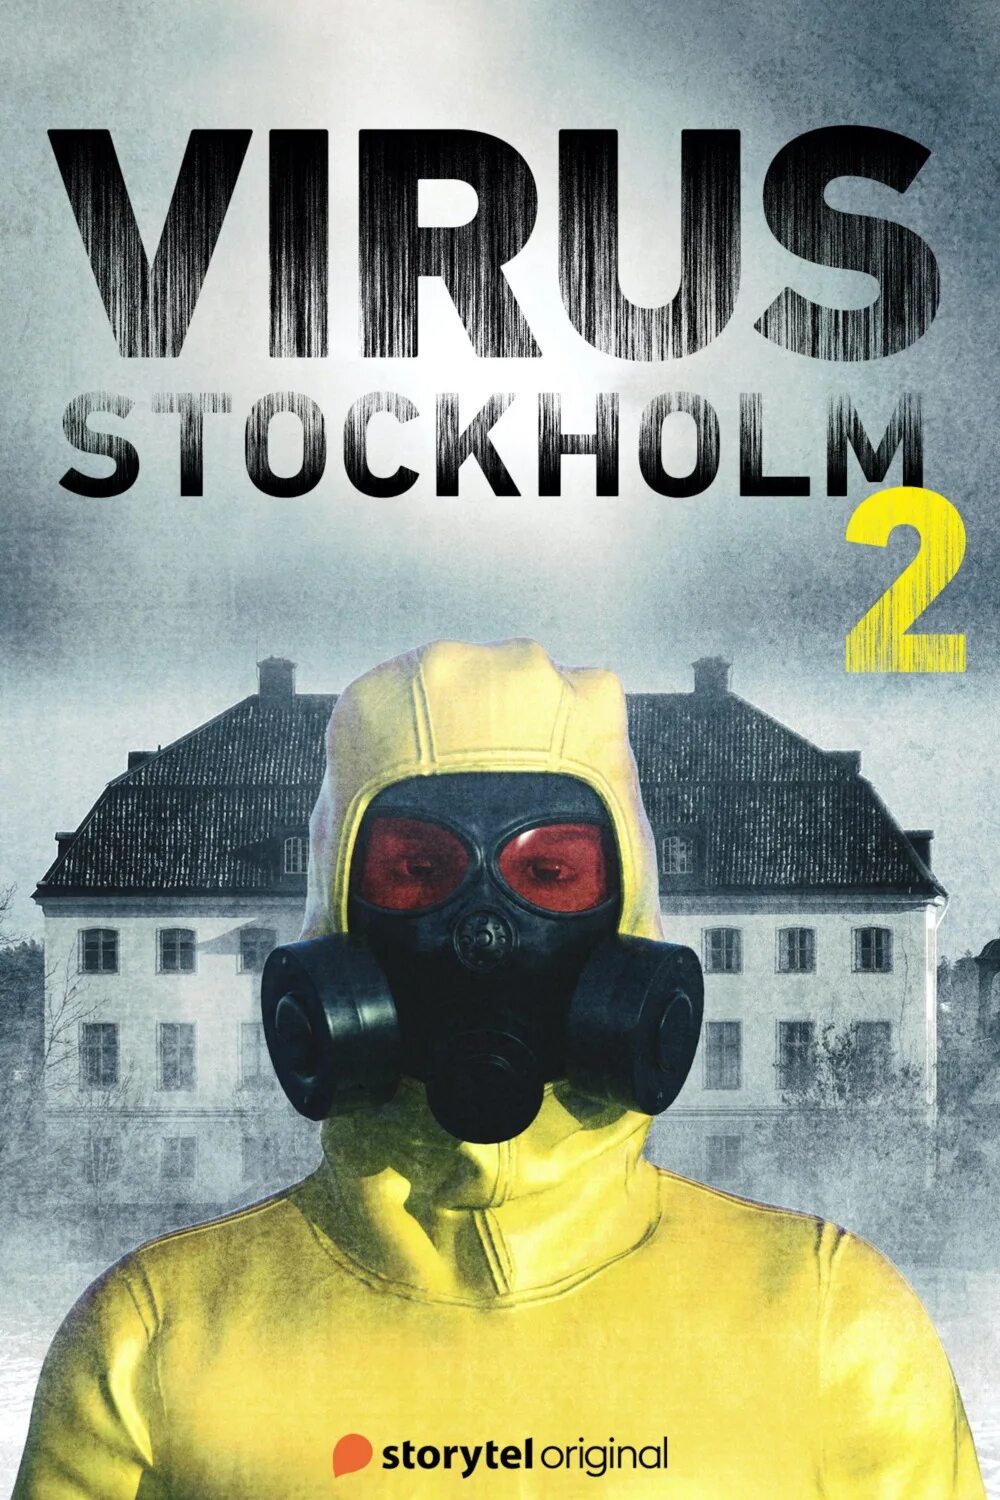 Читать берг взводный. Стокгольмский вирус. Daniel Berg.